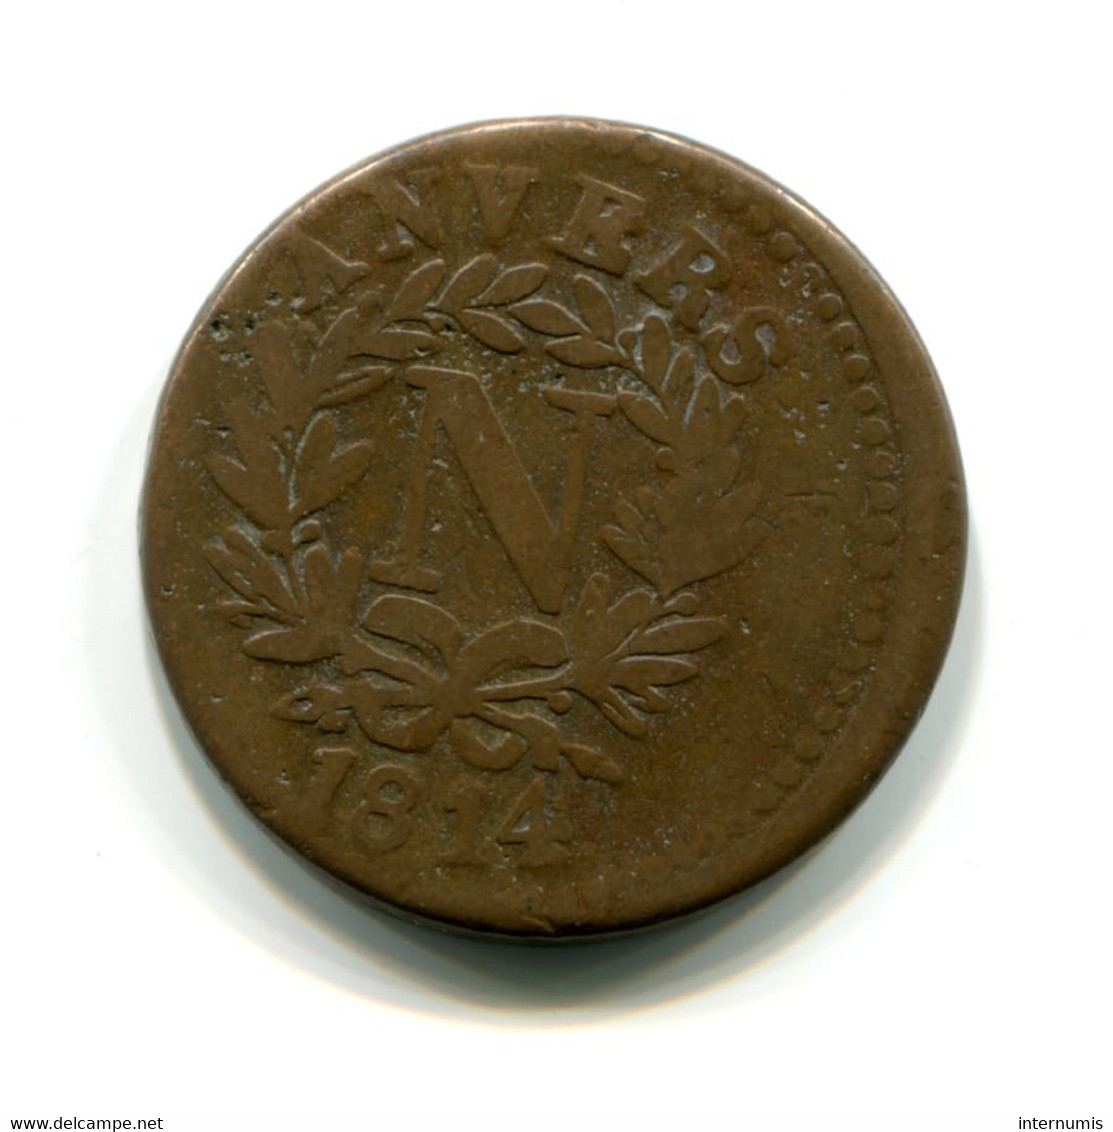 Belgique / Belgium, 5 Centimes, 1814, Siege D'Anvers - Napoléon, Bronze, ,KM#2, F.115?, G.129d, COL.11 - 1814 Siège D’Anvers